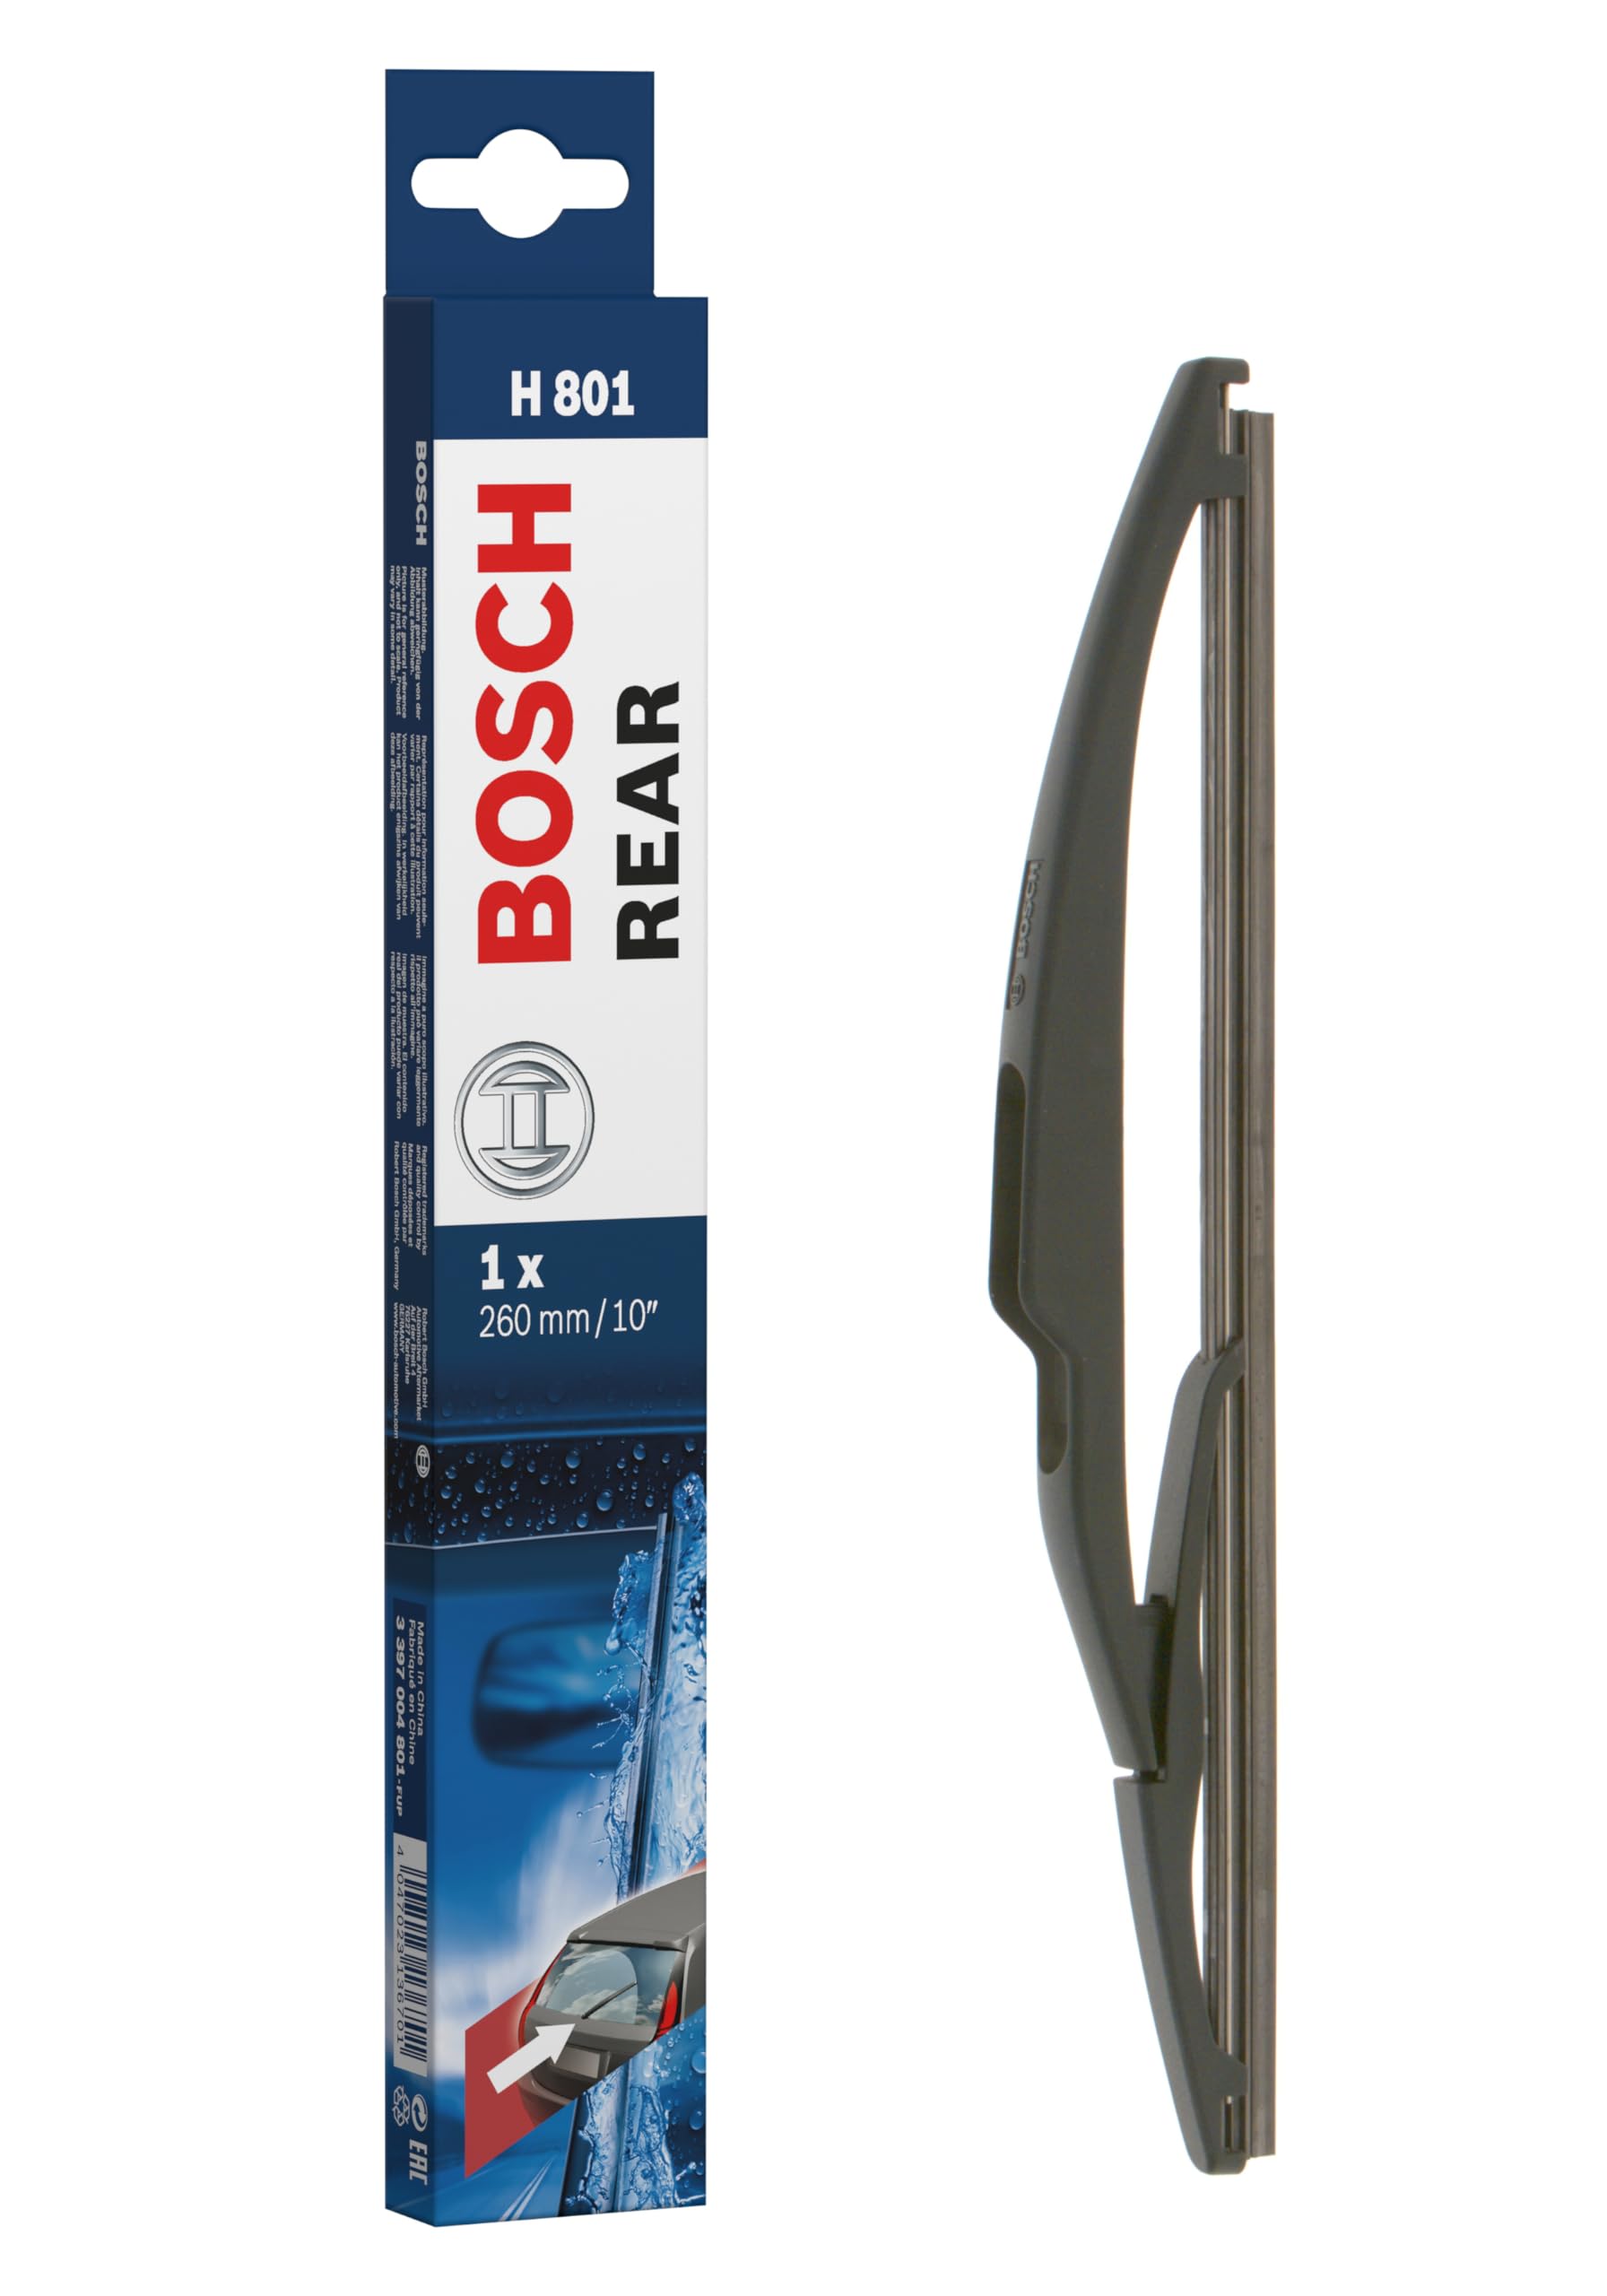 Bosch Scheibenwischer Rear H801, Länge: 260mm – Scheibenwischer für Heckscheibe von Bosch Automotive